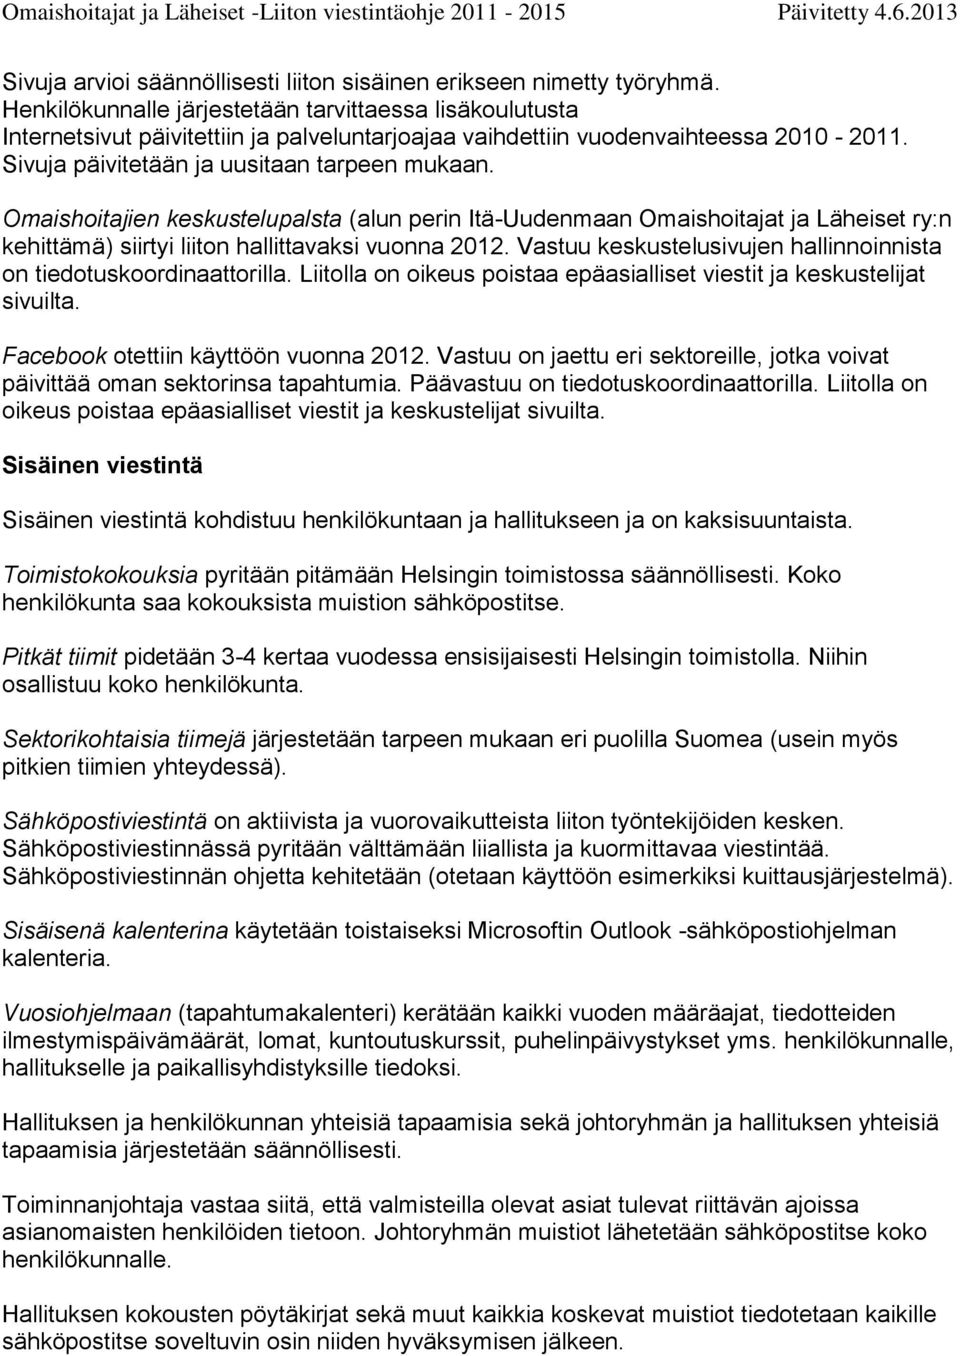 Omaishoitajien keskustelupalsta (alun perin Itä-Uudenmaan Omaishoitajat ja Läheiset ry:n kehittämä) siirtyi liiton hallittavaksi vuonna 2012.